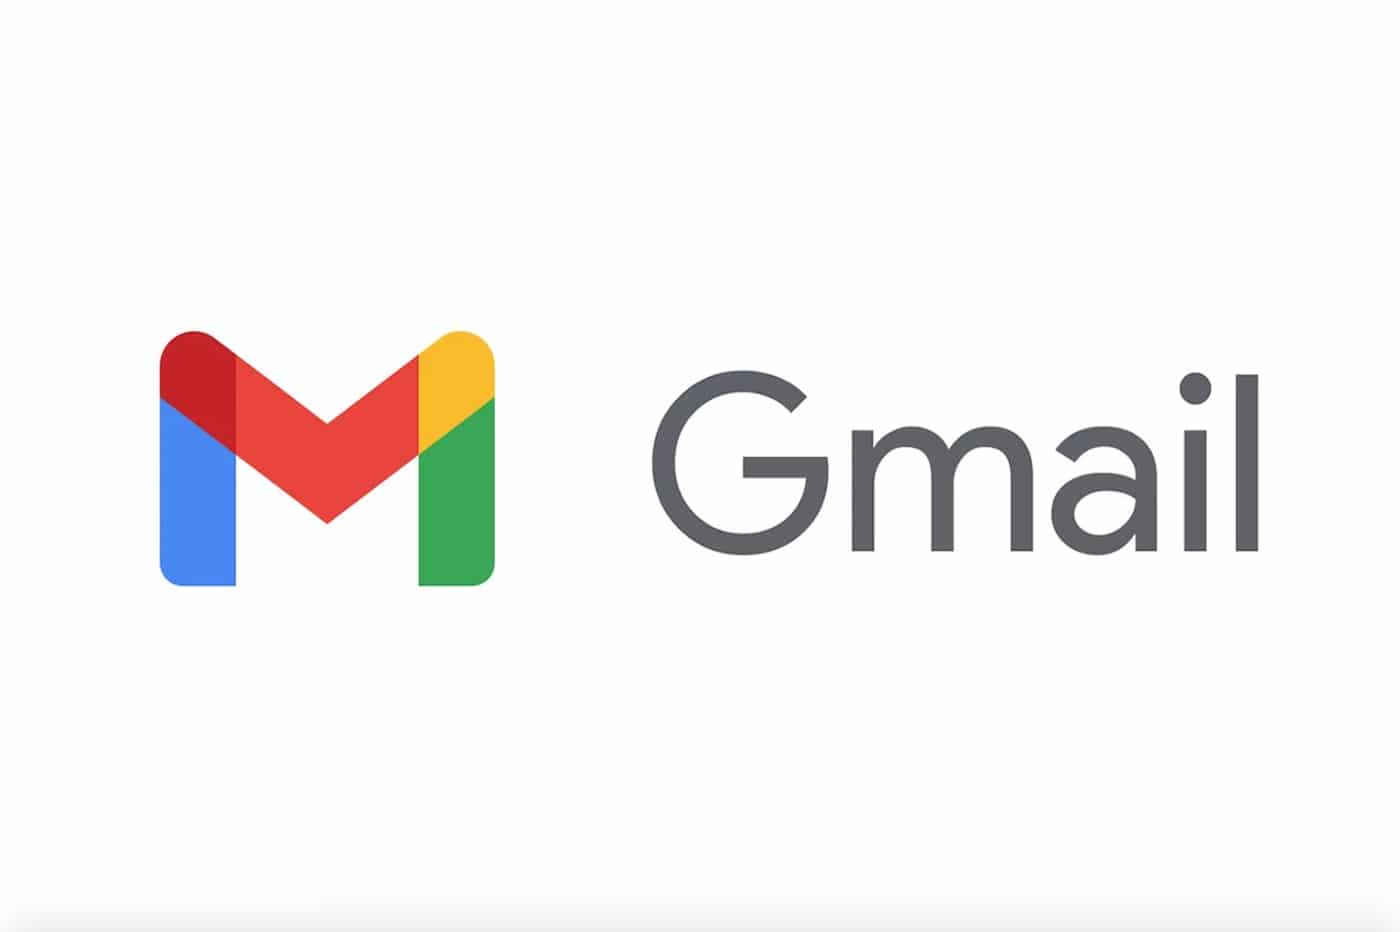 Die Suche nach E-Mails auf einem Smartphone in Gmail wird viel besser werden, aber es ist nicht sicher